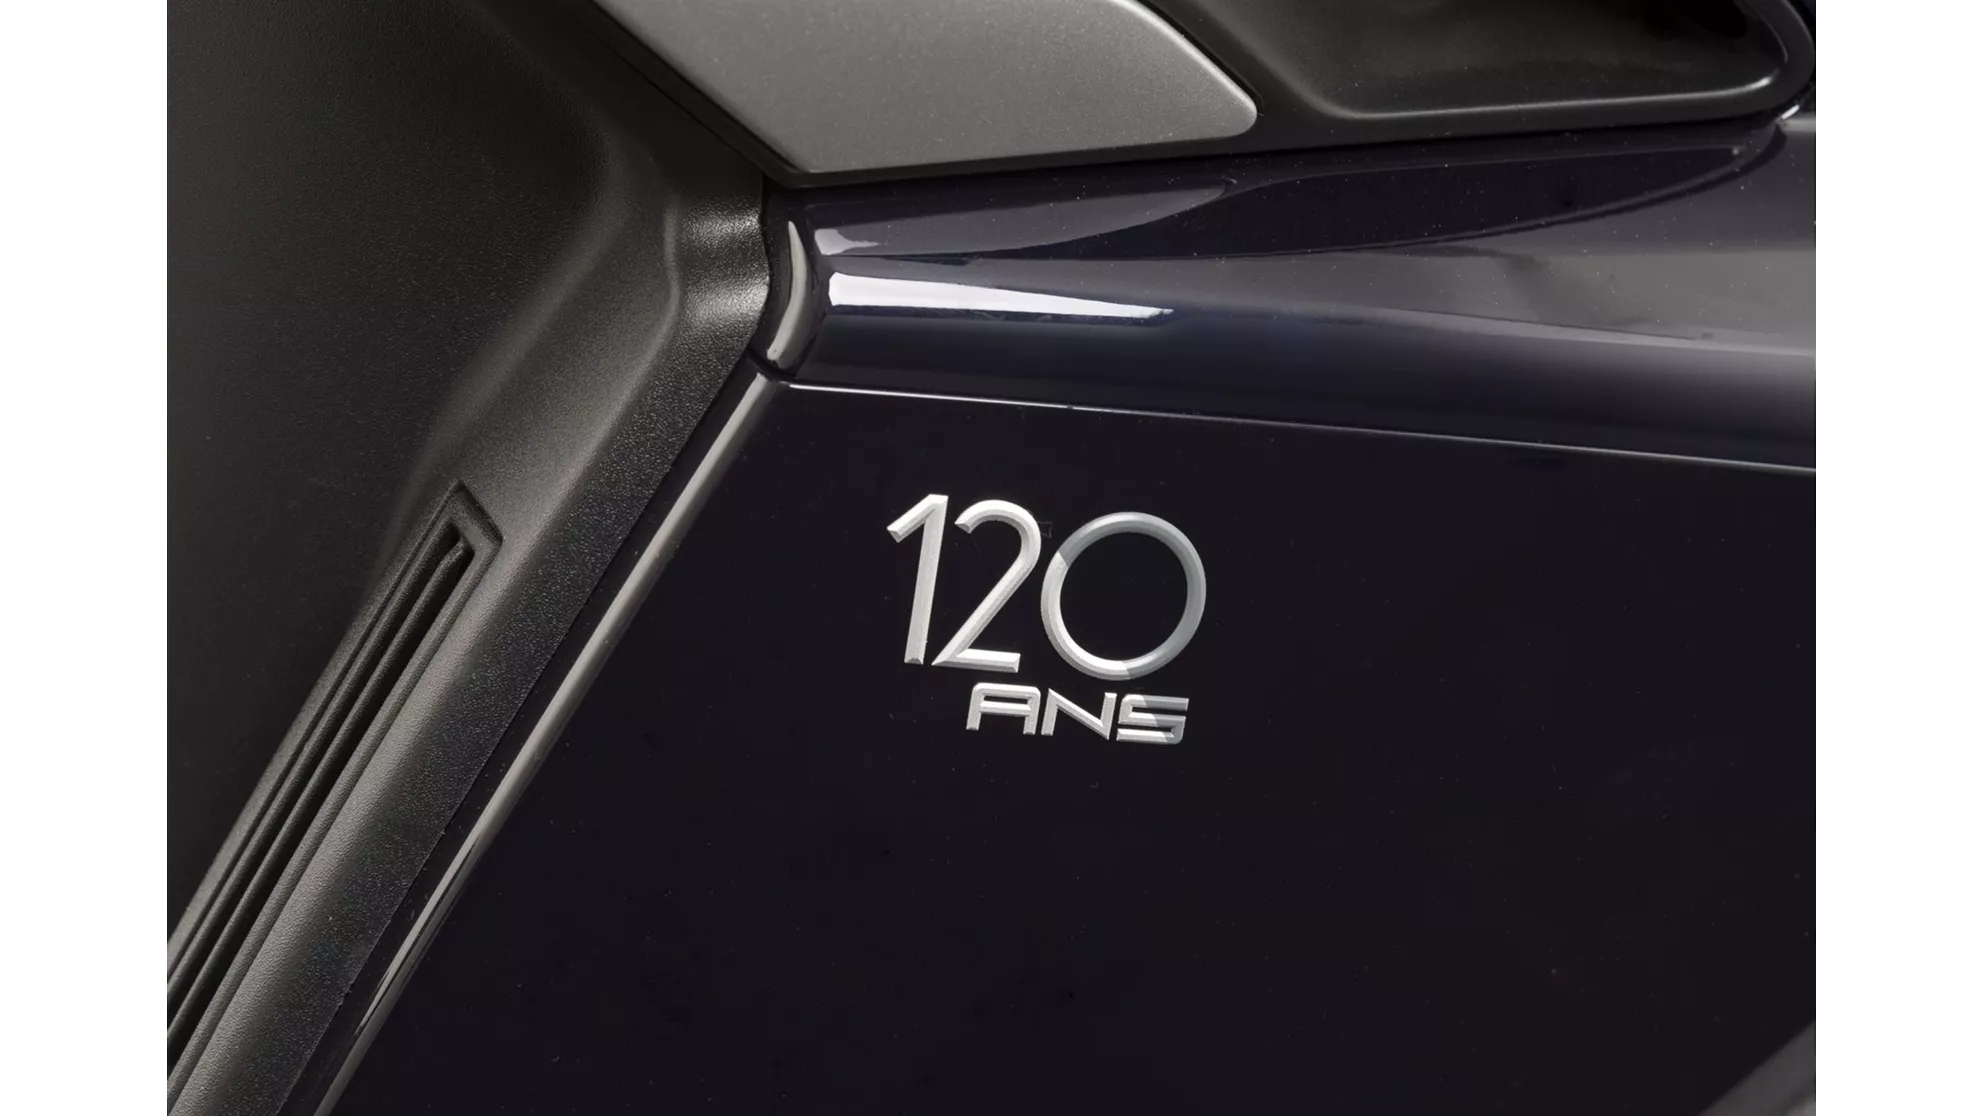 Peugeot Metropolis 120 ans - Resim 1